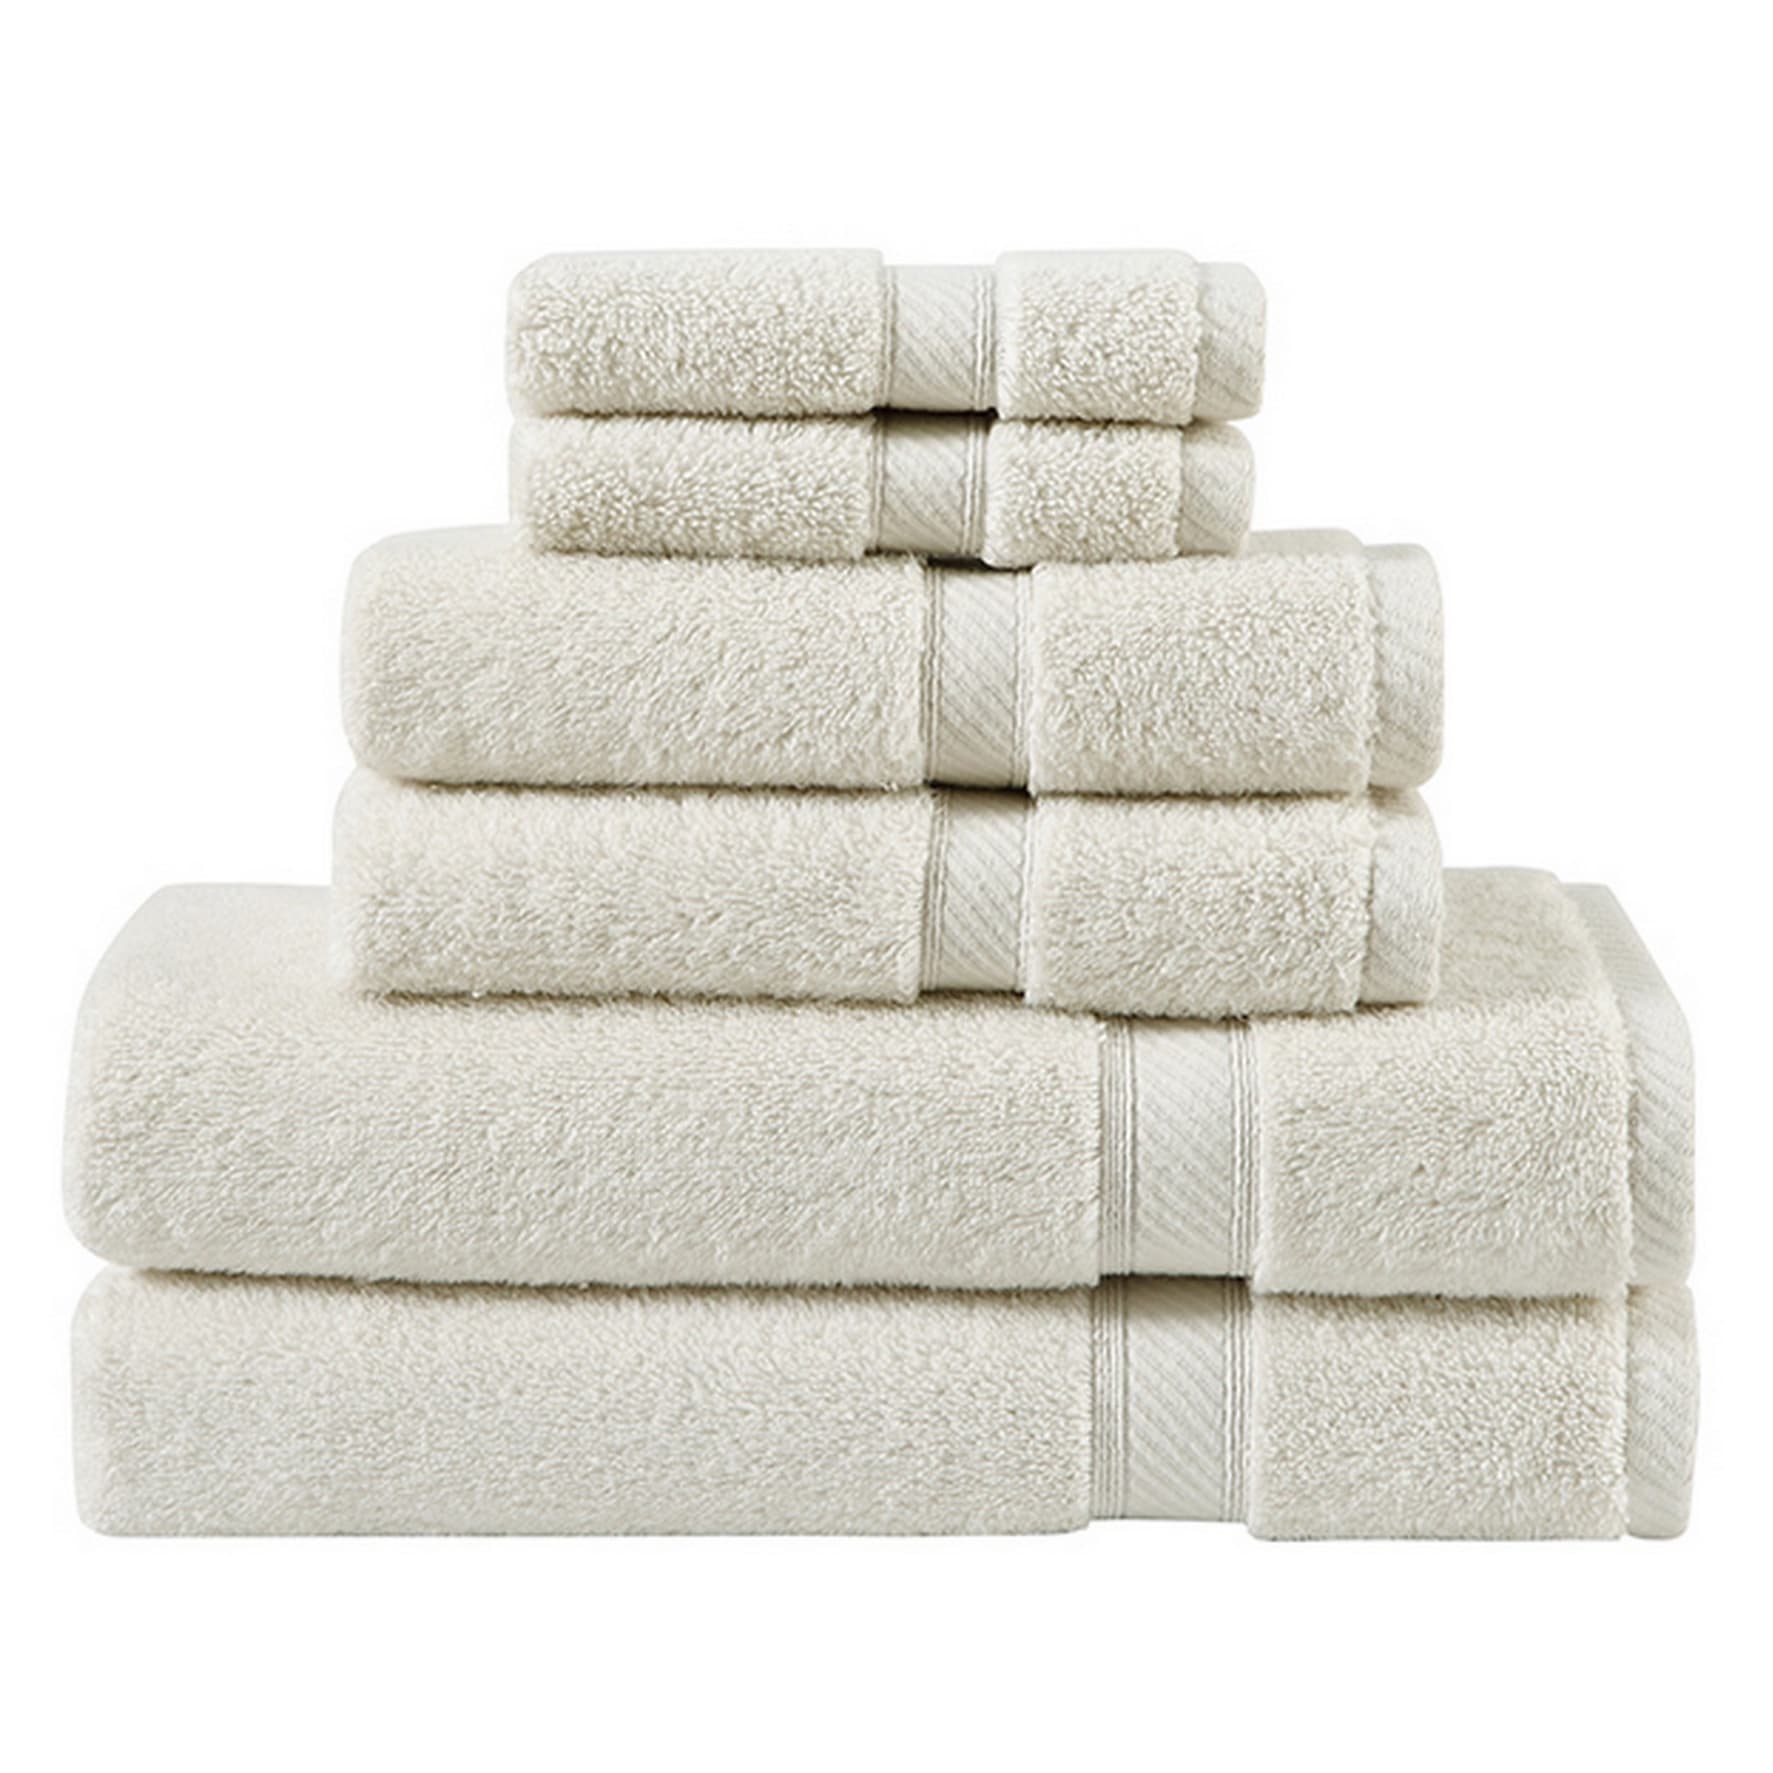 Charisma 4pk Luxury Towels Set: 2 Hand Towels & 2 Wash Cloths ,Color:  Lavender